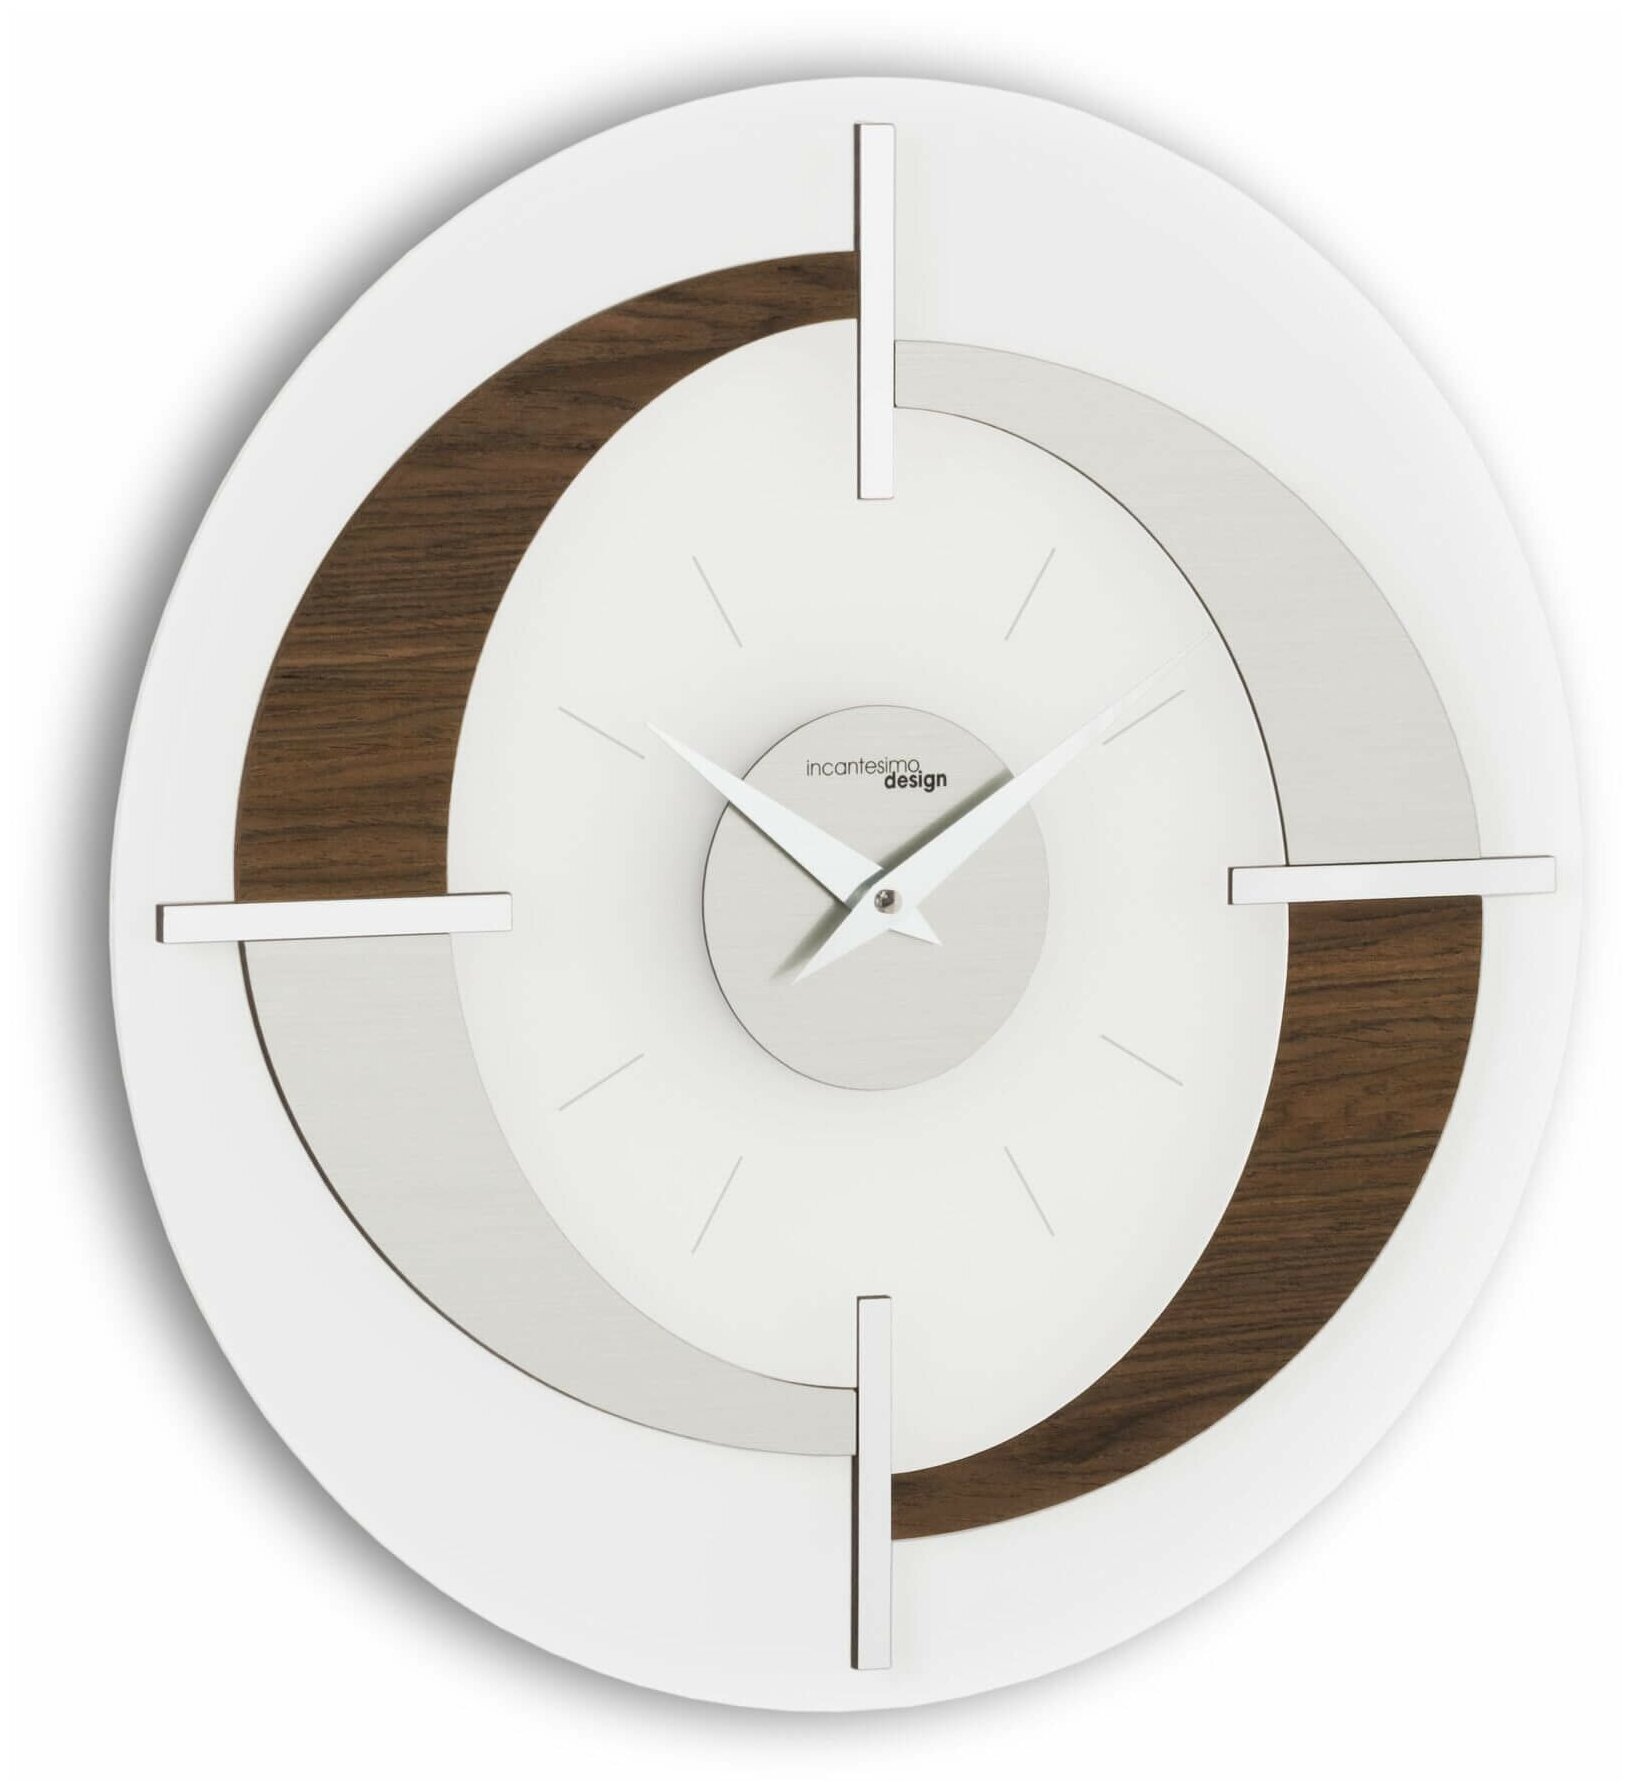 Итальянские дизайнерские настенные часы. Бренд Incantesimo Design. Модель Modus. Цвет: мокко